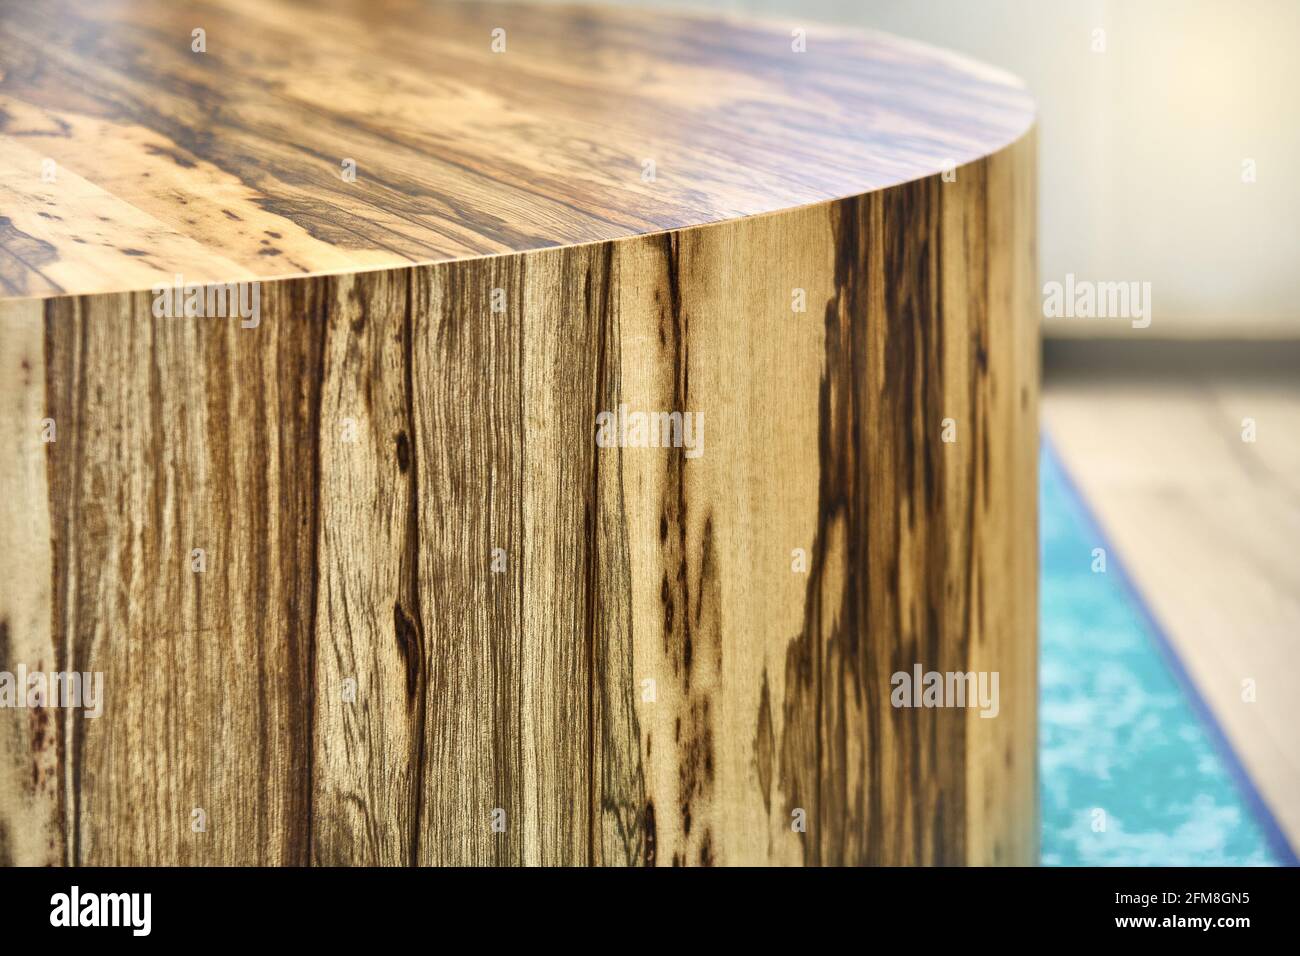 Seite des eleganten runden Couchtisches aus Sperrholz und Schwarzes Ofram  Naturfurnier, das im Wohnzimmer extrem nahe steht Stockfotografie - Alamy